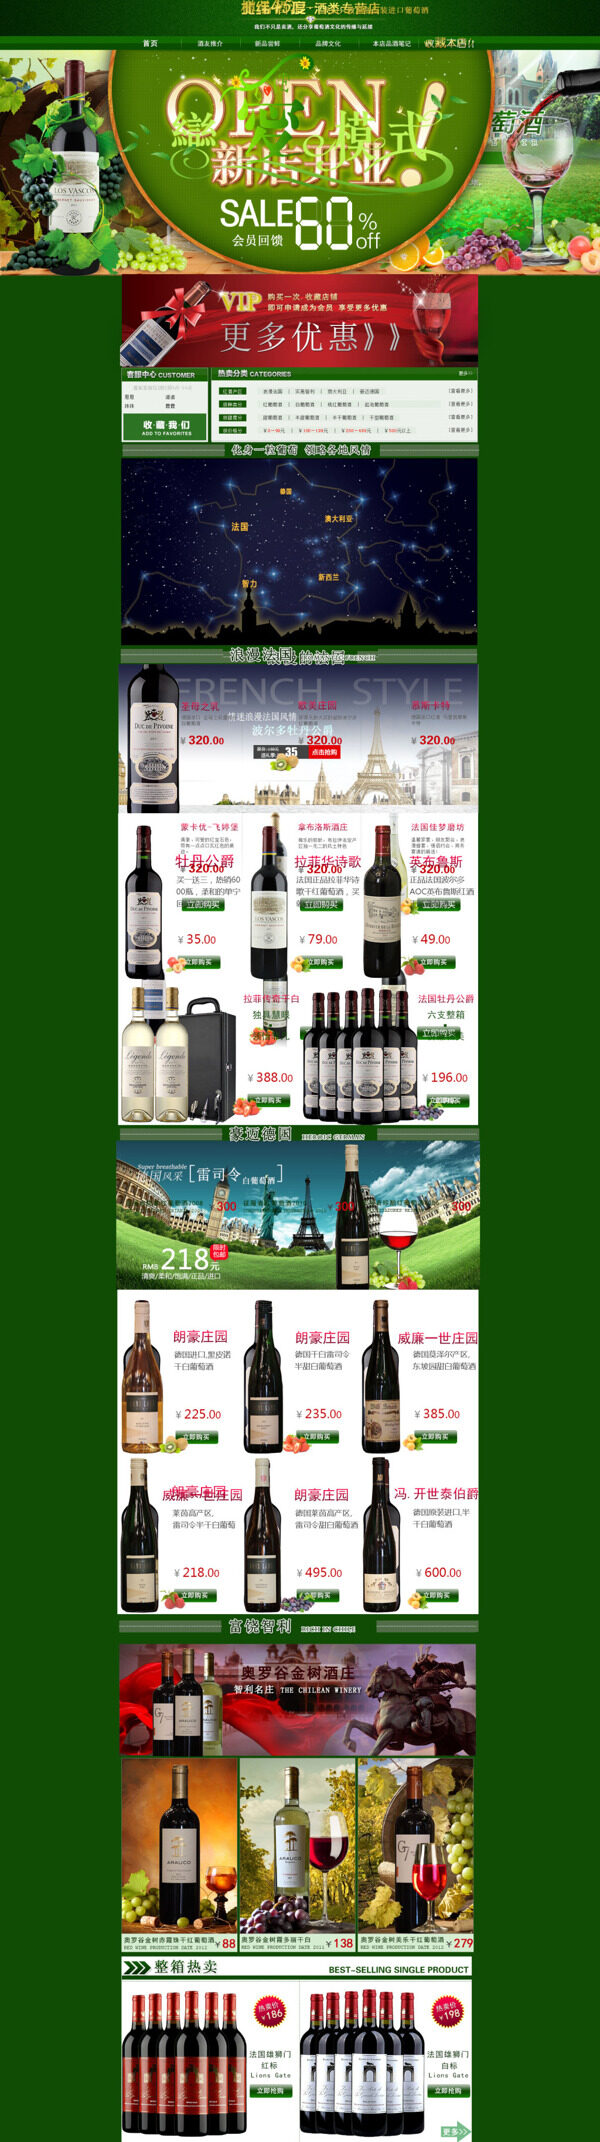 淘宝红酒产品促销海报